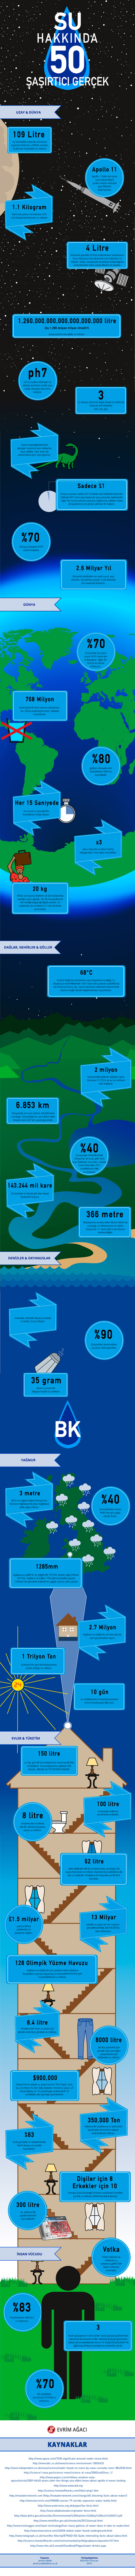 Su ile ilgili 50 şaşırtıcı gerçek. Bu infografiği dilimize kazandıran Mehmet Onurcan Kaya'ya teşekkür ederiz.